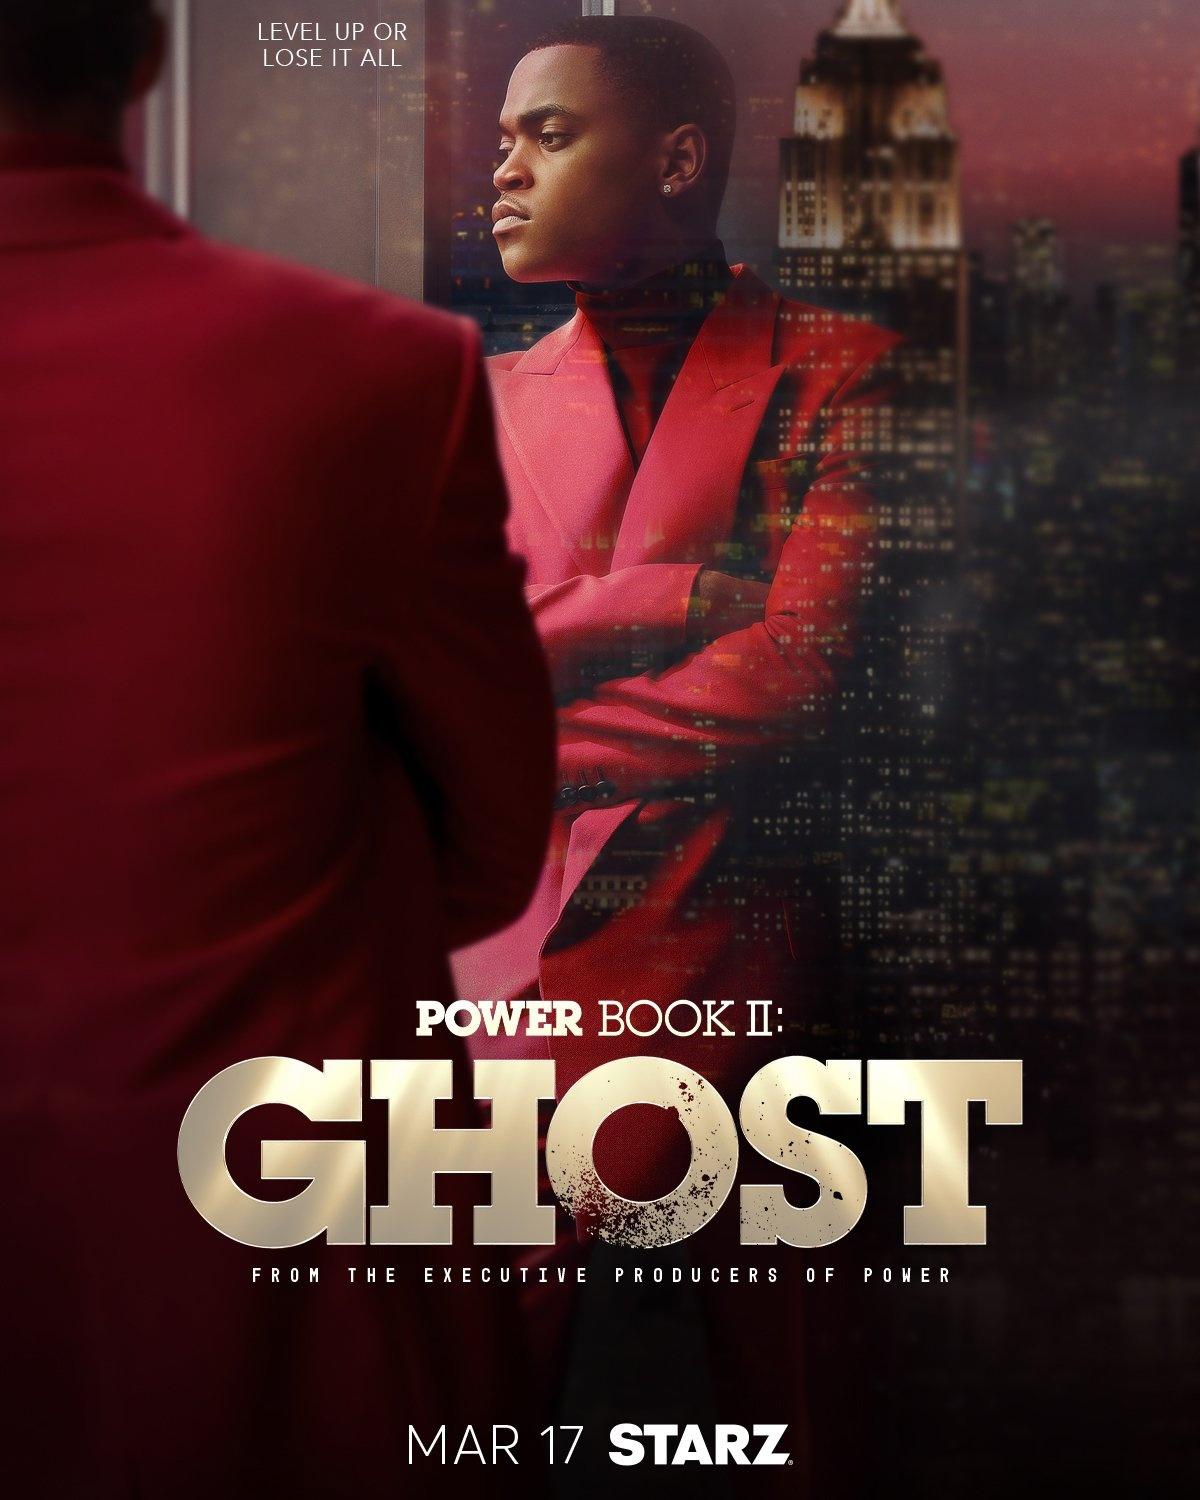 Постер фильма Власть в ночном городе. Книга вторая: Призрак | Power Book II: Ghost